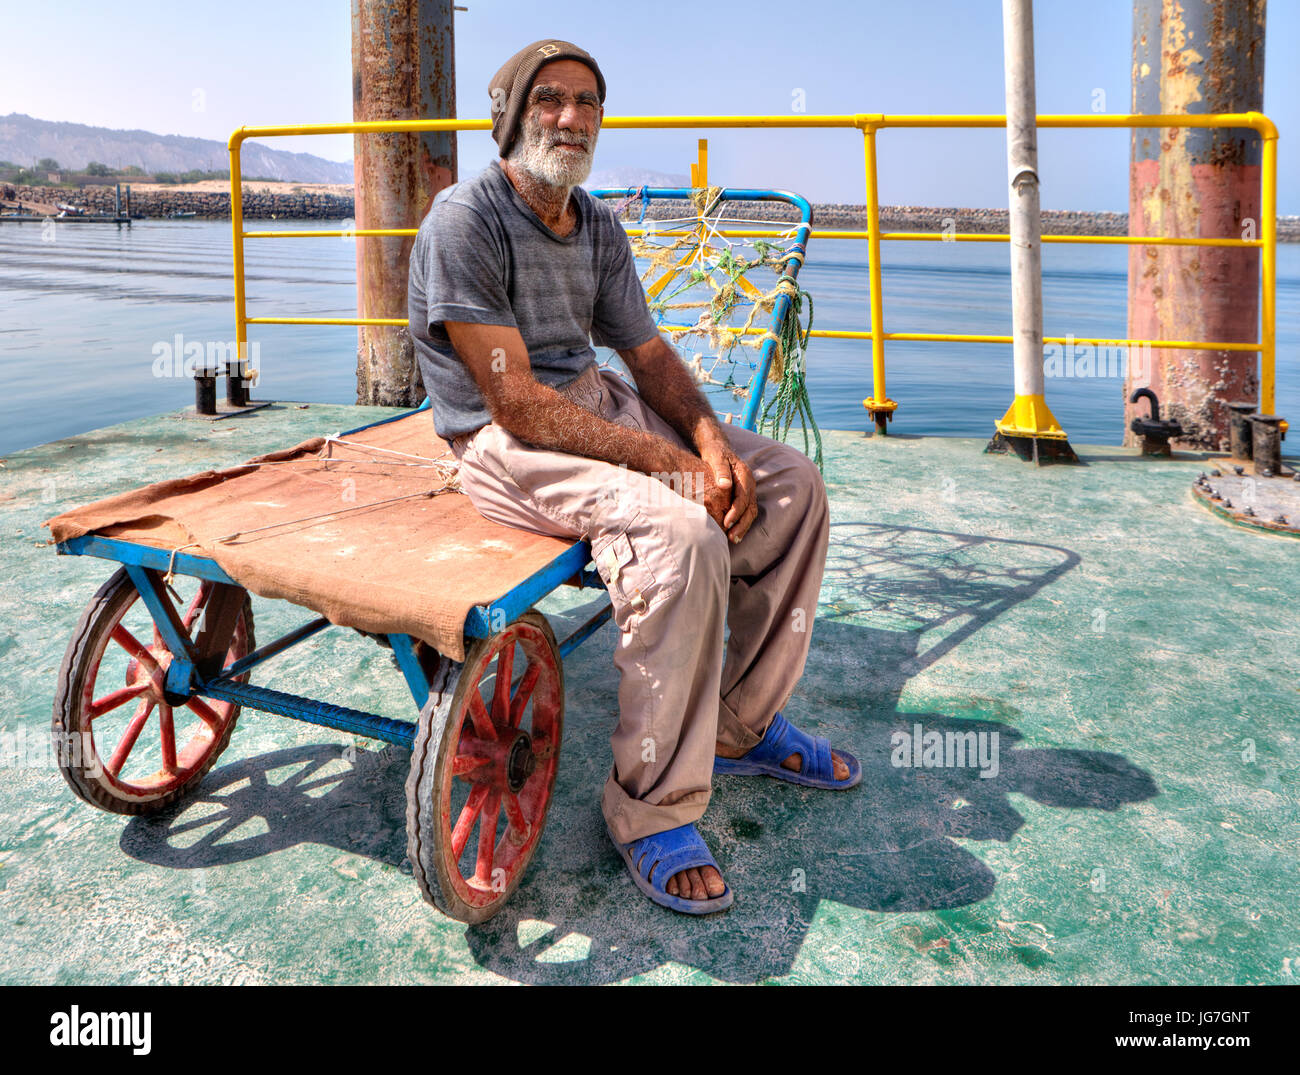 L'île d'Ormuz, en Hormozgan, Iran - 17 avril, 2017 personnes âgées : Un chargeur port iranien s'assied sur son chariot sur la jetée de l'île d'Ormuz. Banque D'Images